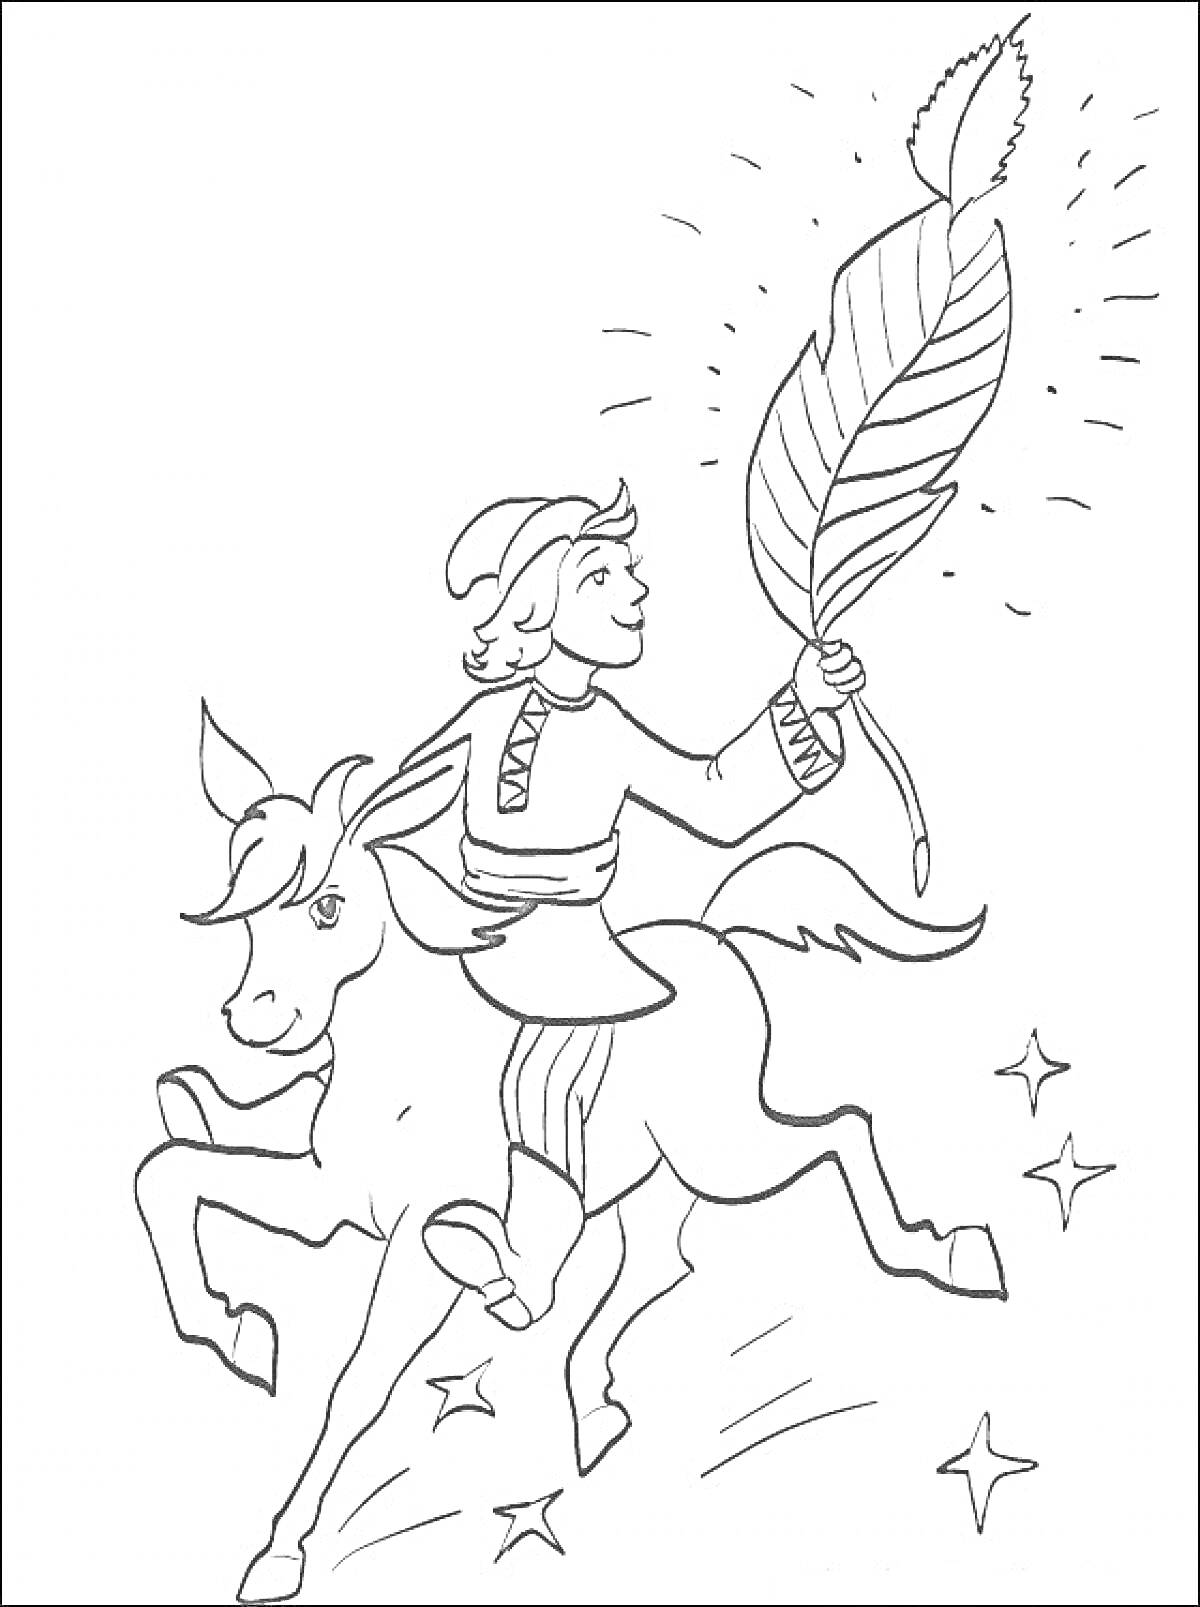 Мальчик на лошади держит в руке большое перо, вокруг сверкают звезды